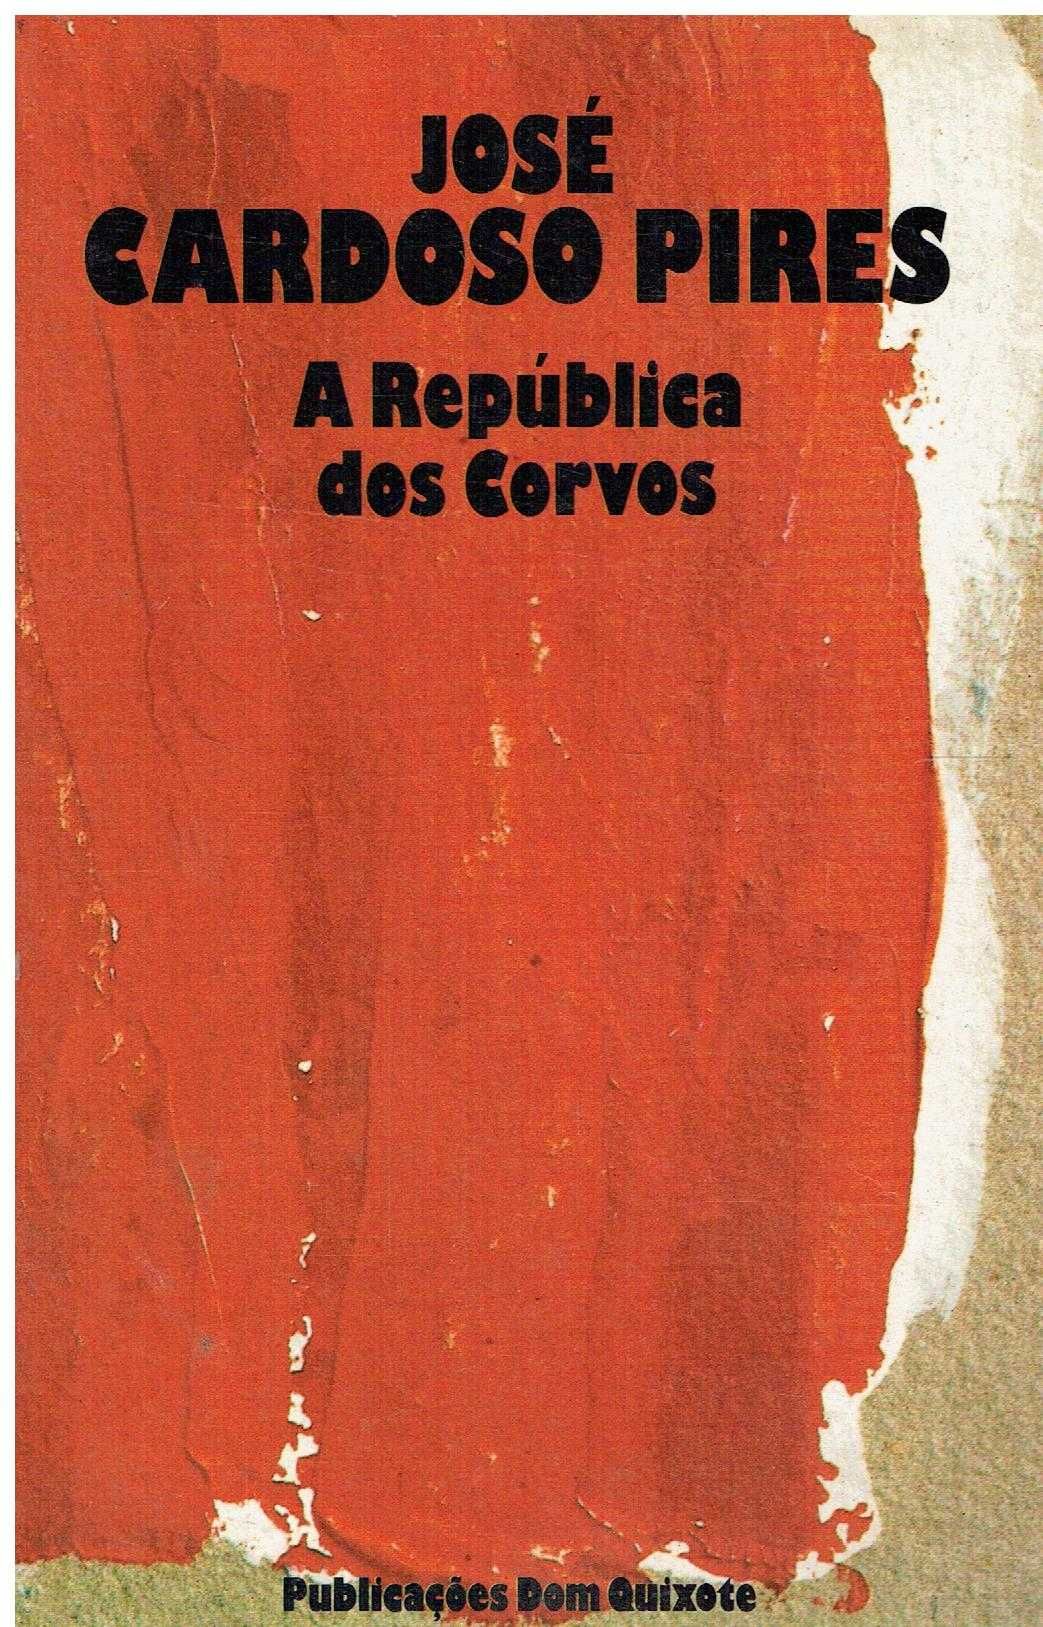 0447

A República dos Corvos
de José Cardoso Pires